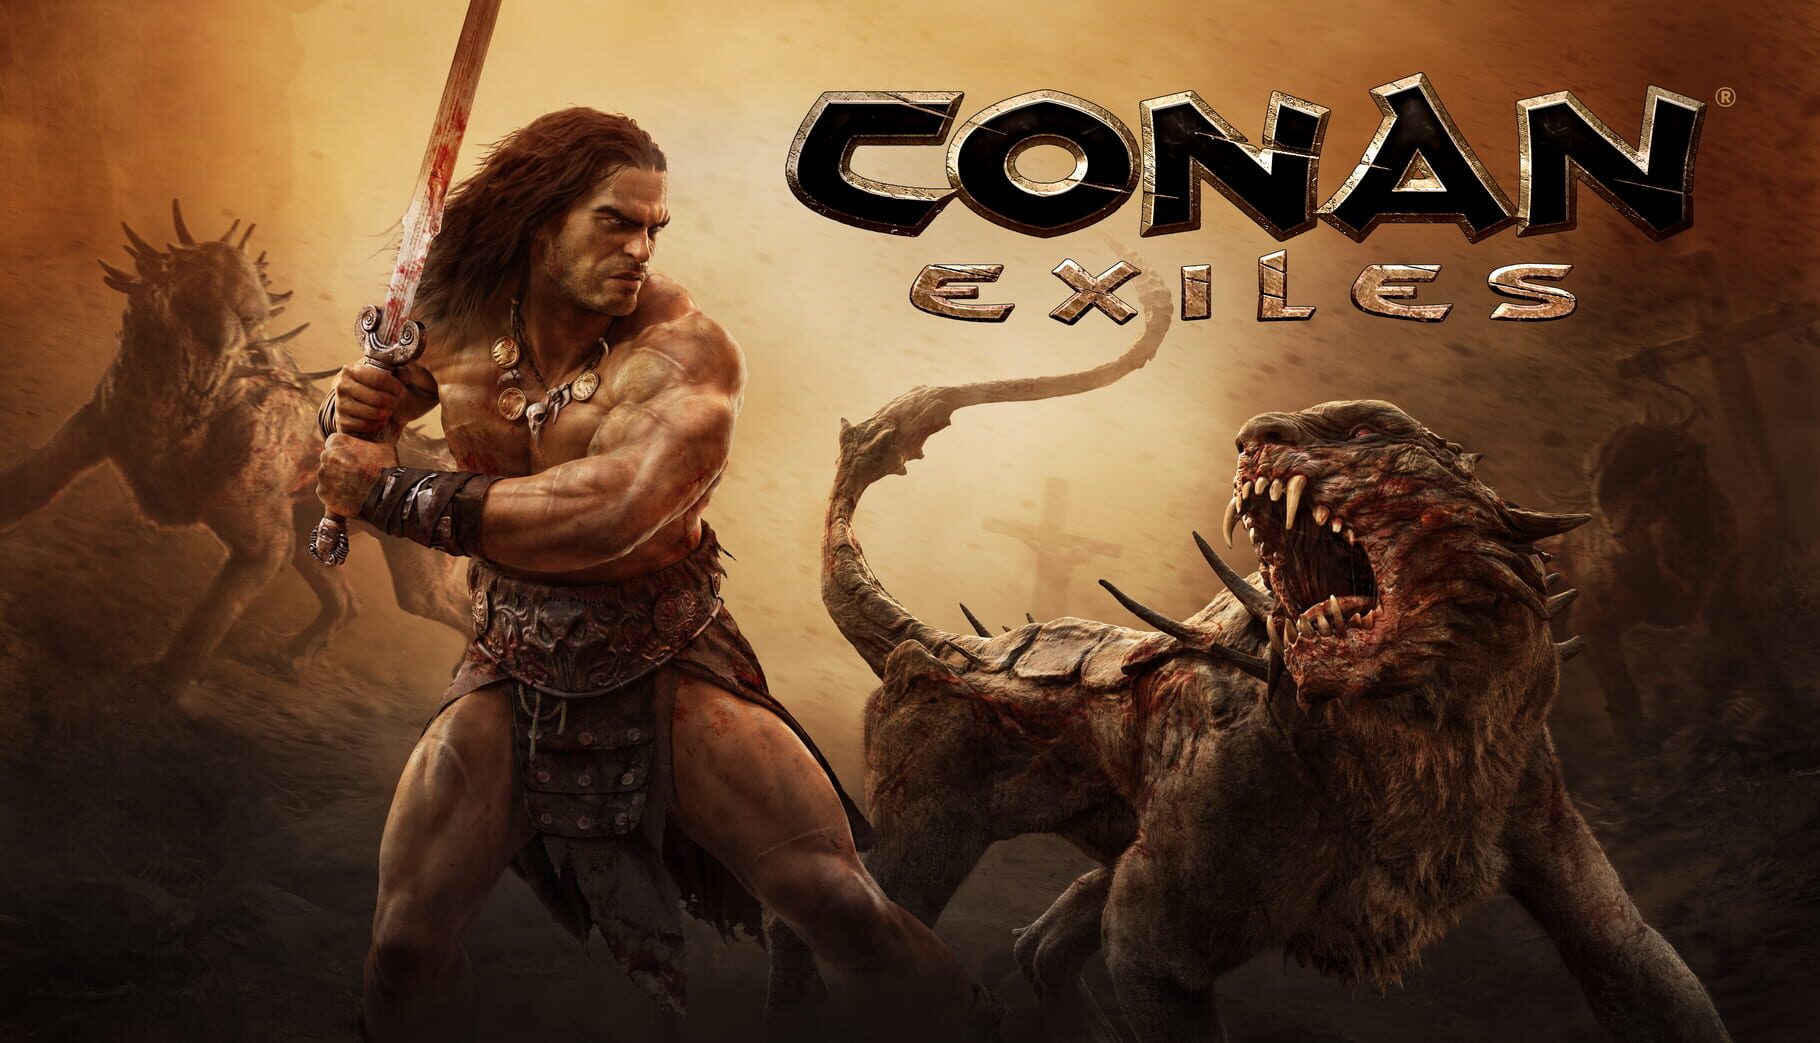 Arte - Conan Exiles